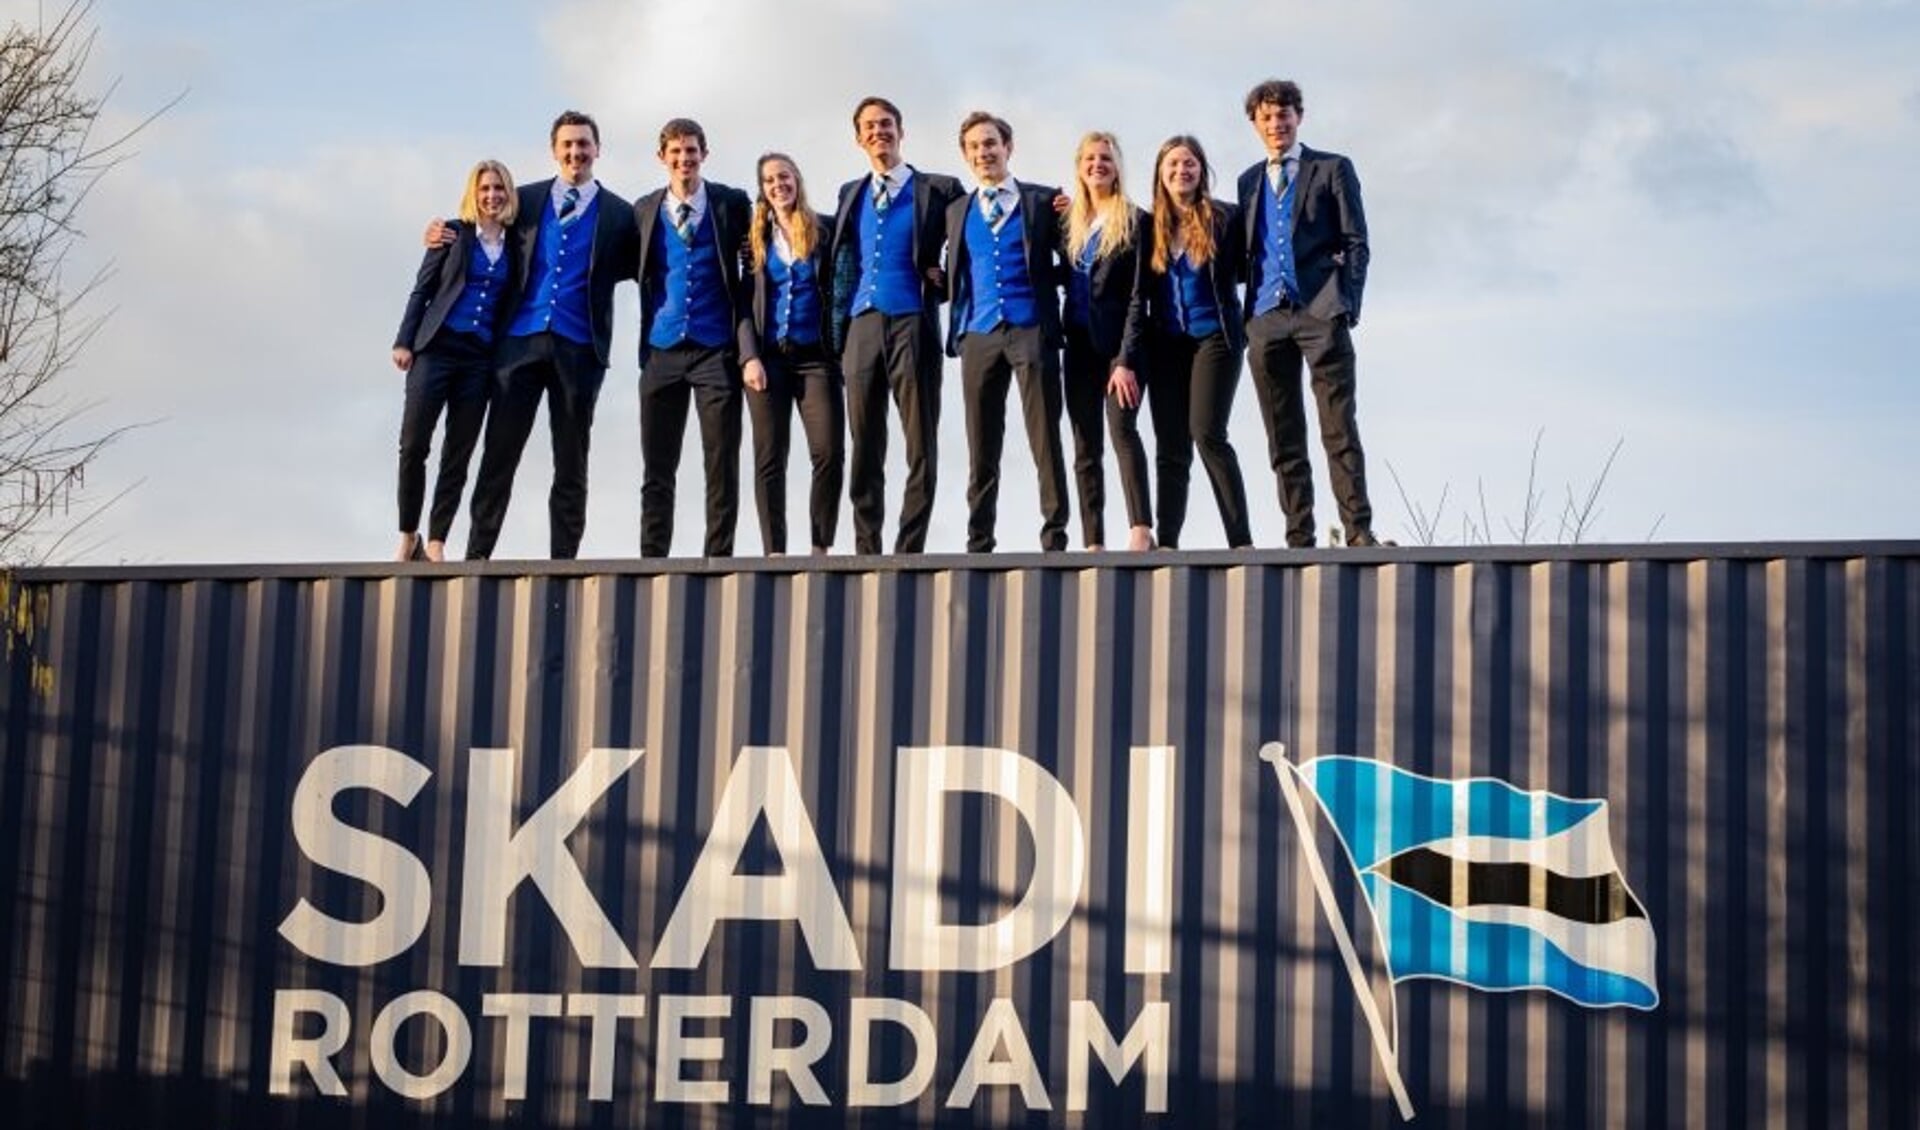 Het Skadi bestuur van 2021/2022. Vanaf links gezien is Niels de derde student in de rij. Foto: Skadi